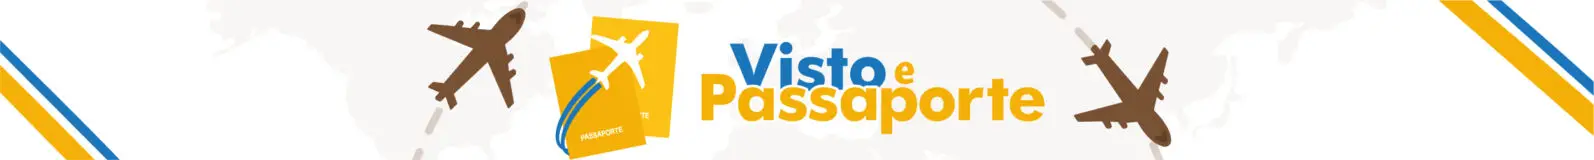 Visto e Passaporte